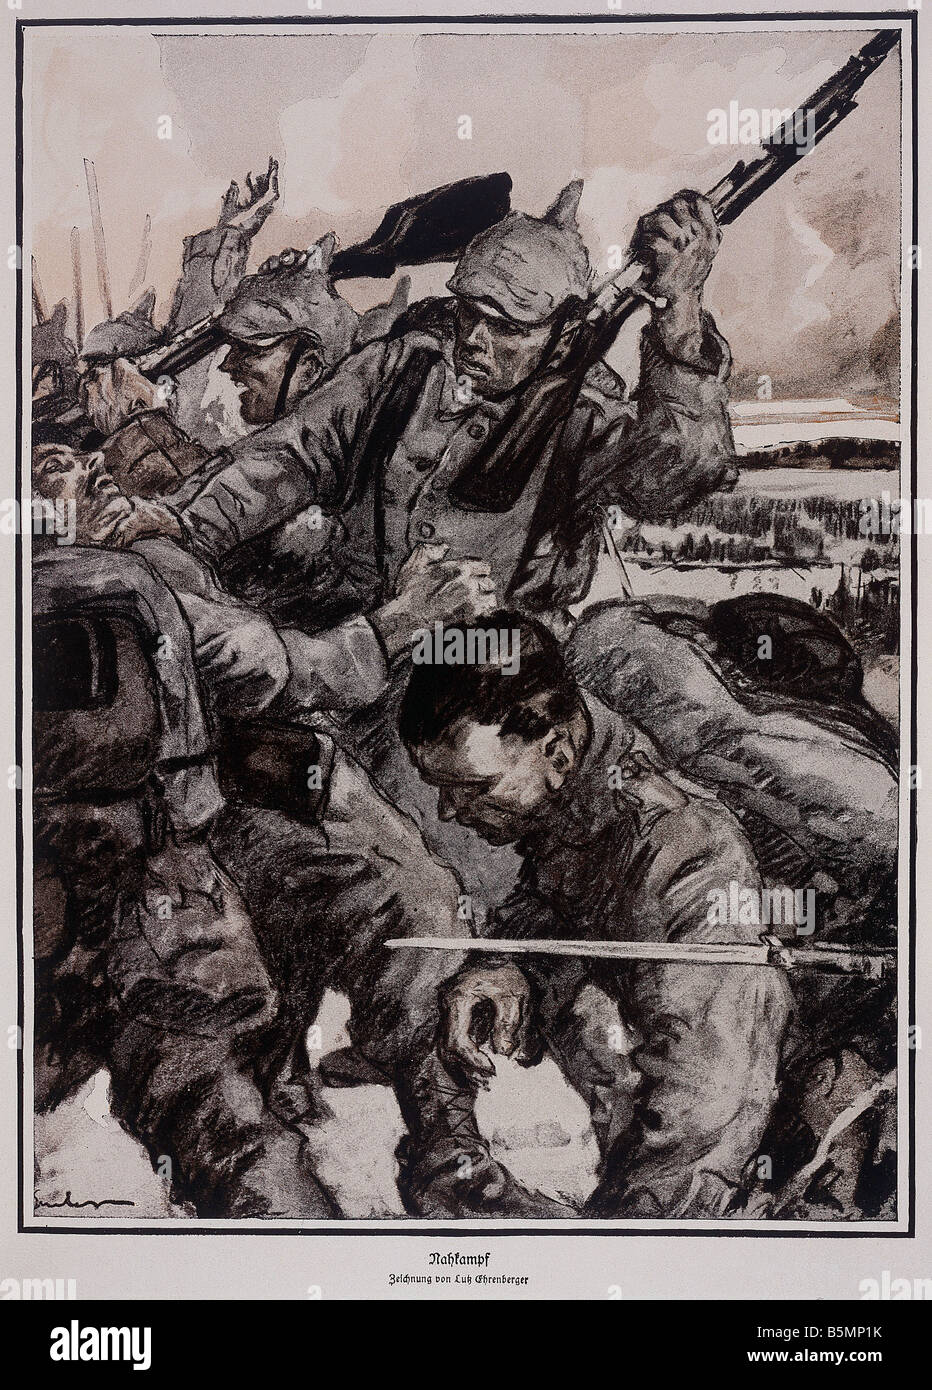 9 1914 0 0 A2 Close combat Lutz Ehrenberger World War 1 1914 18 Close combat Coloured drawing by Lutz Ehrenberger 1914 Stock Photo